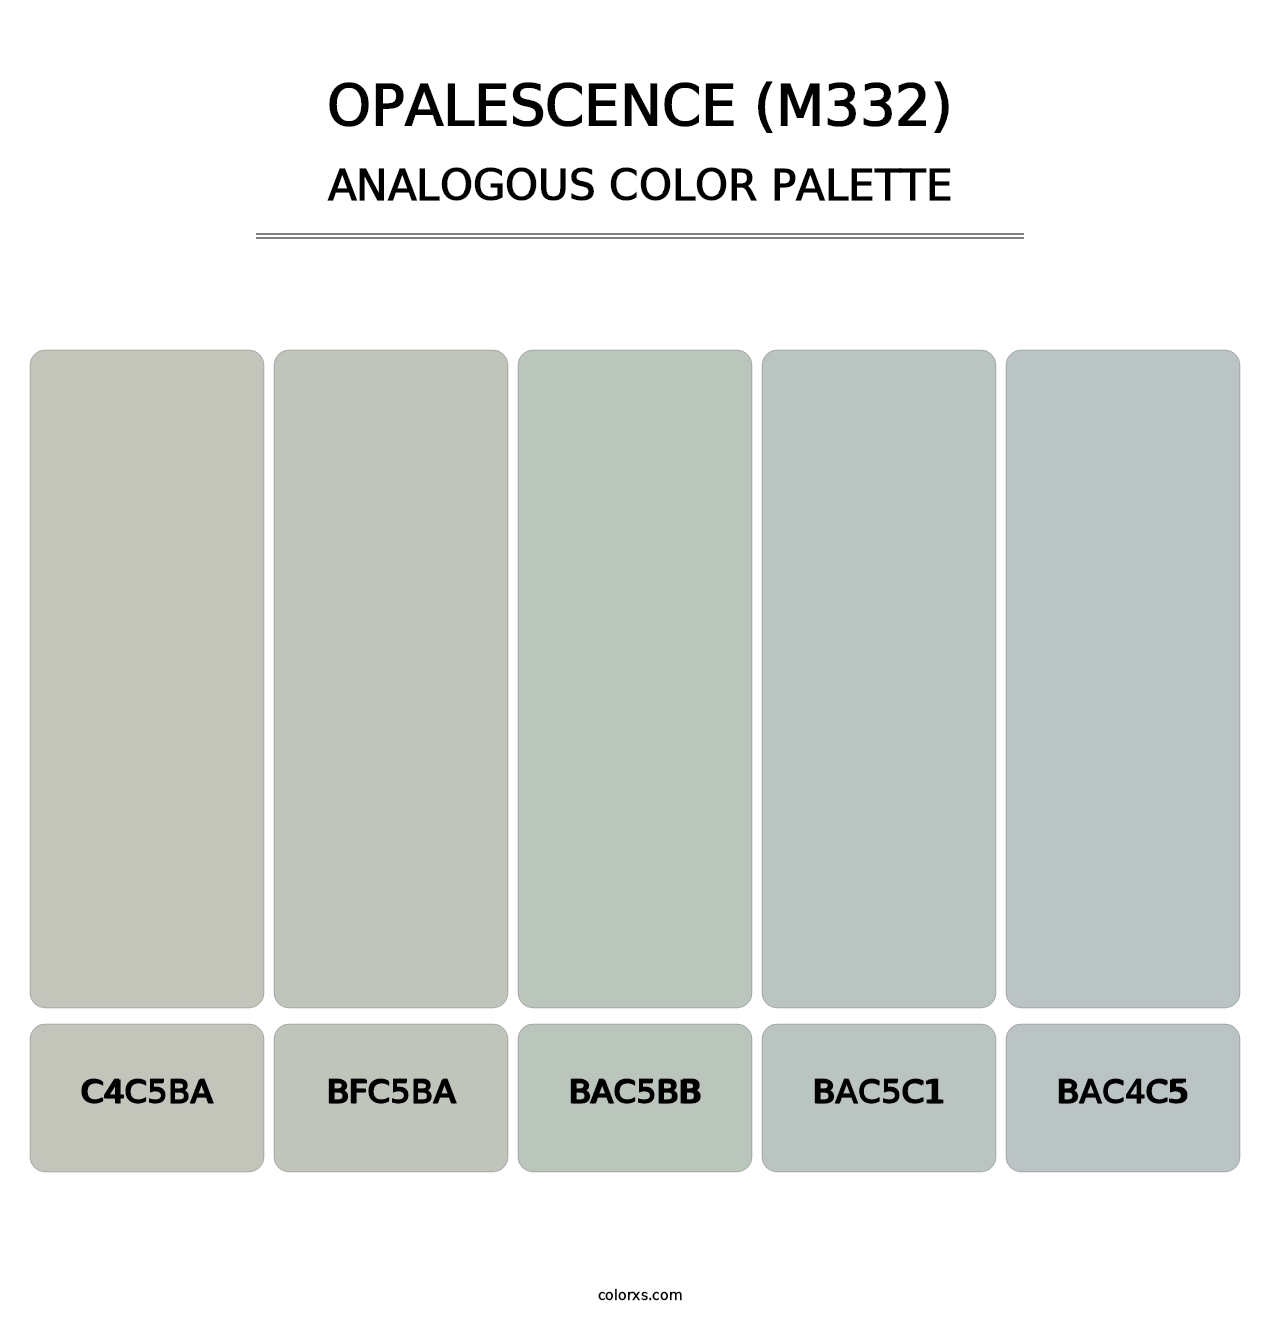 Opalescence (M332) - Analogous Color Palette